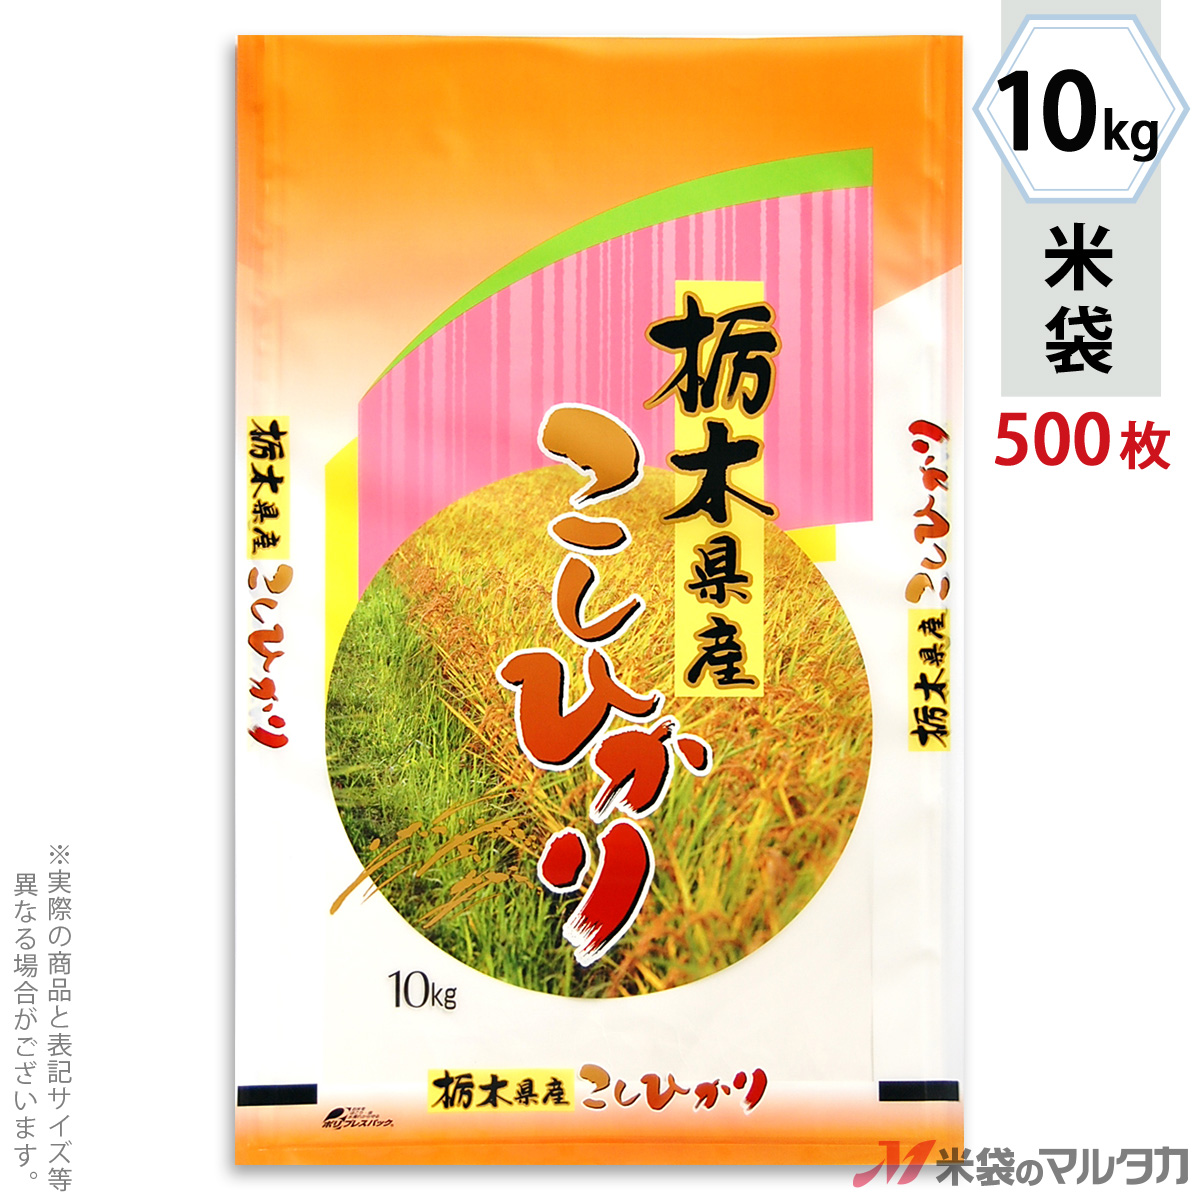 日本初の公式オンライン 米袋 ポリポリ ネオブレス 栃木産こしひかり